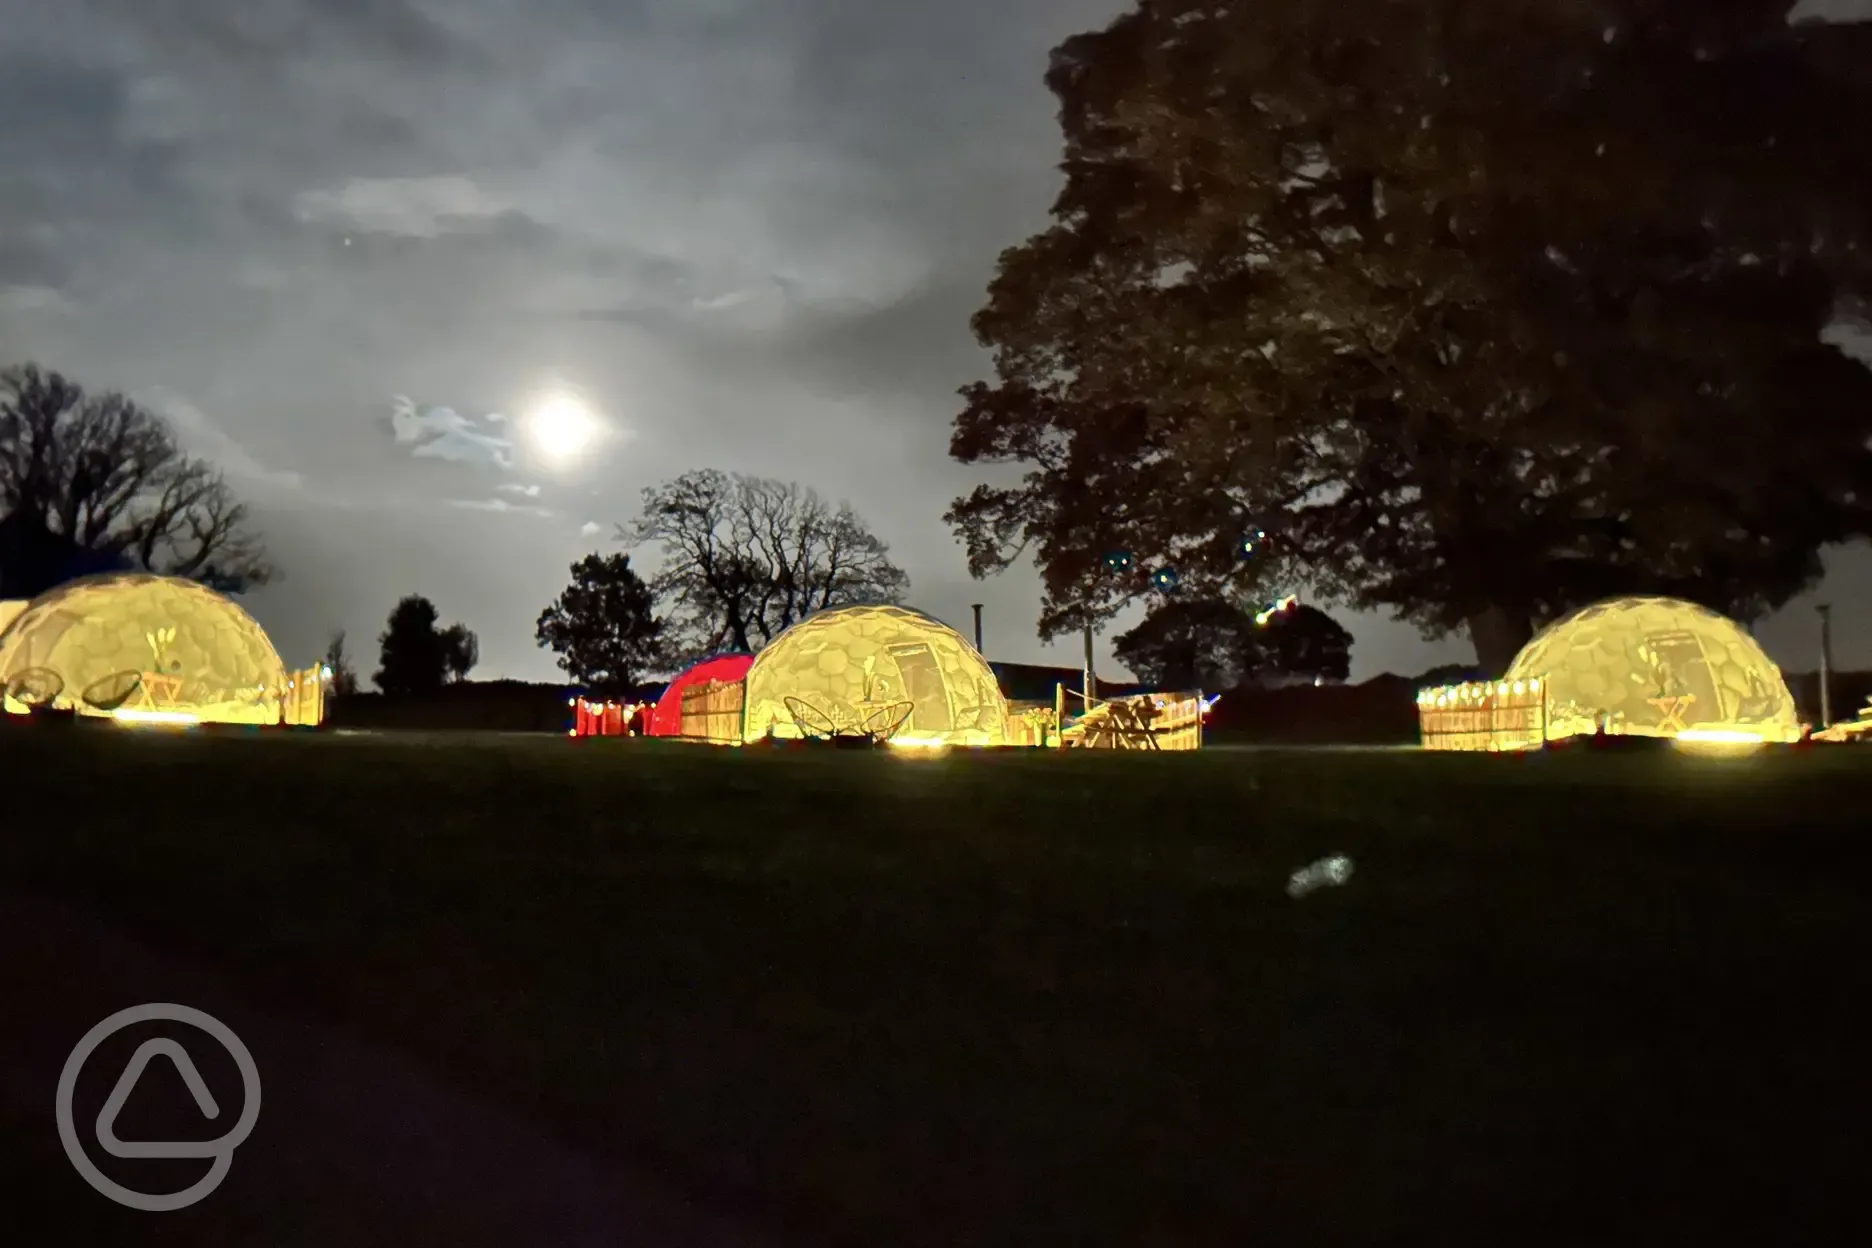 Glamping domes at night